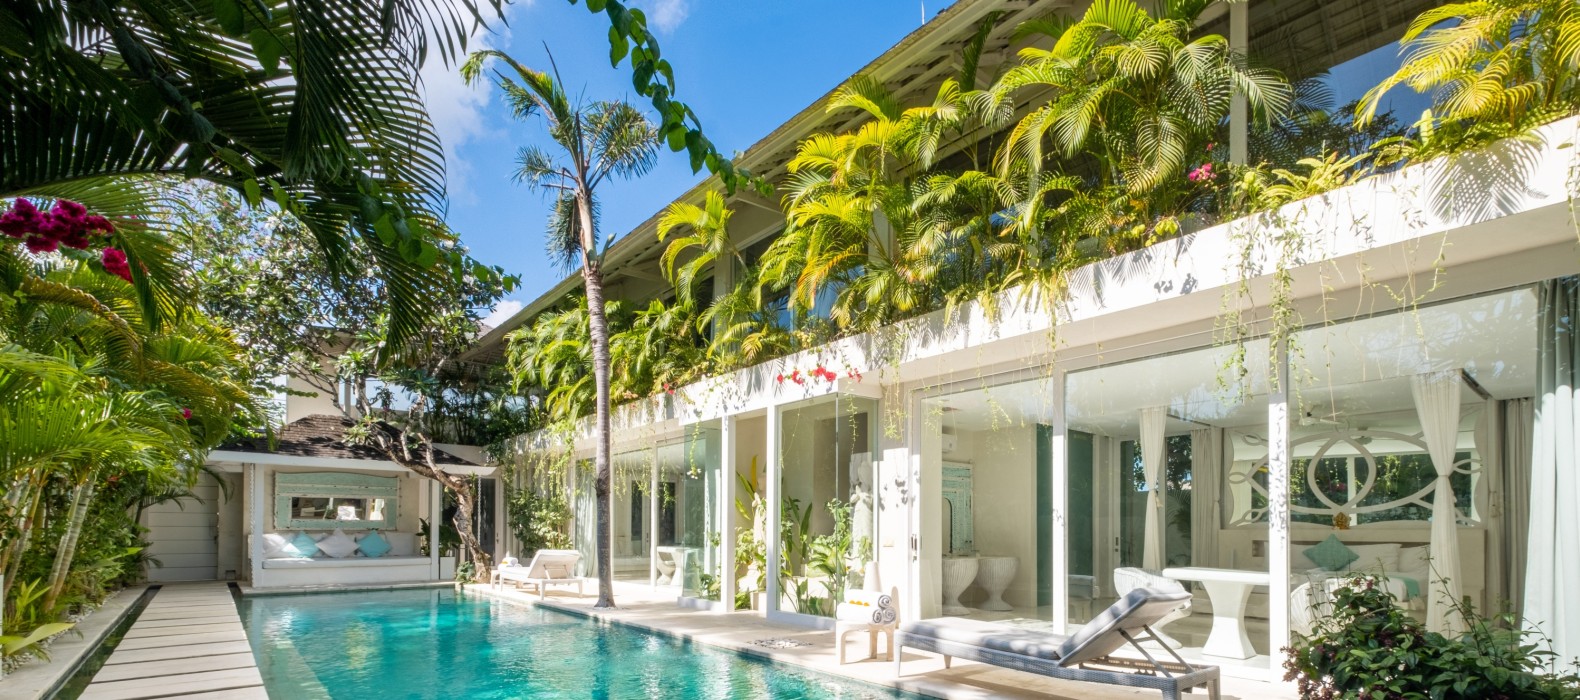 Exterior pool of Villa Serentiy in Bali